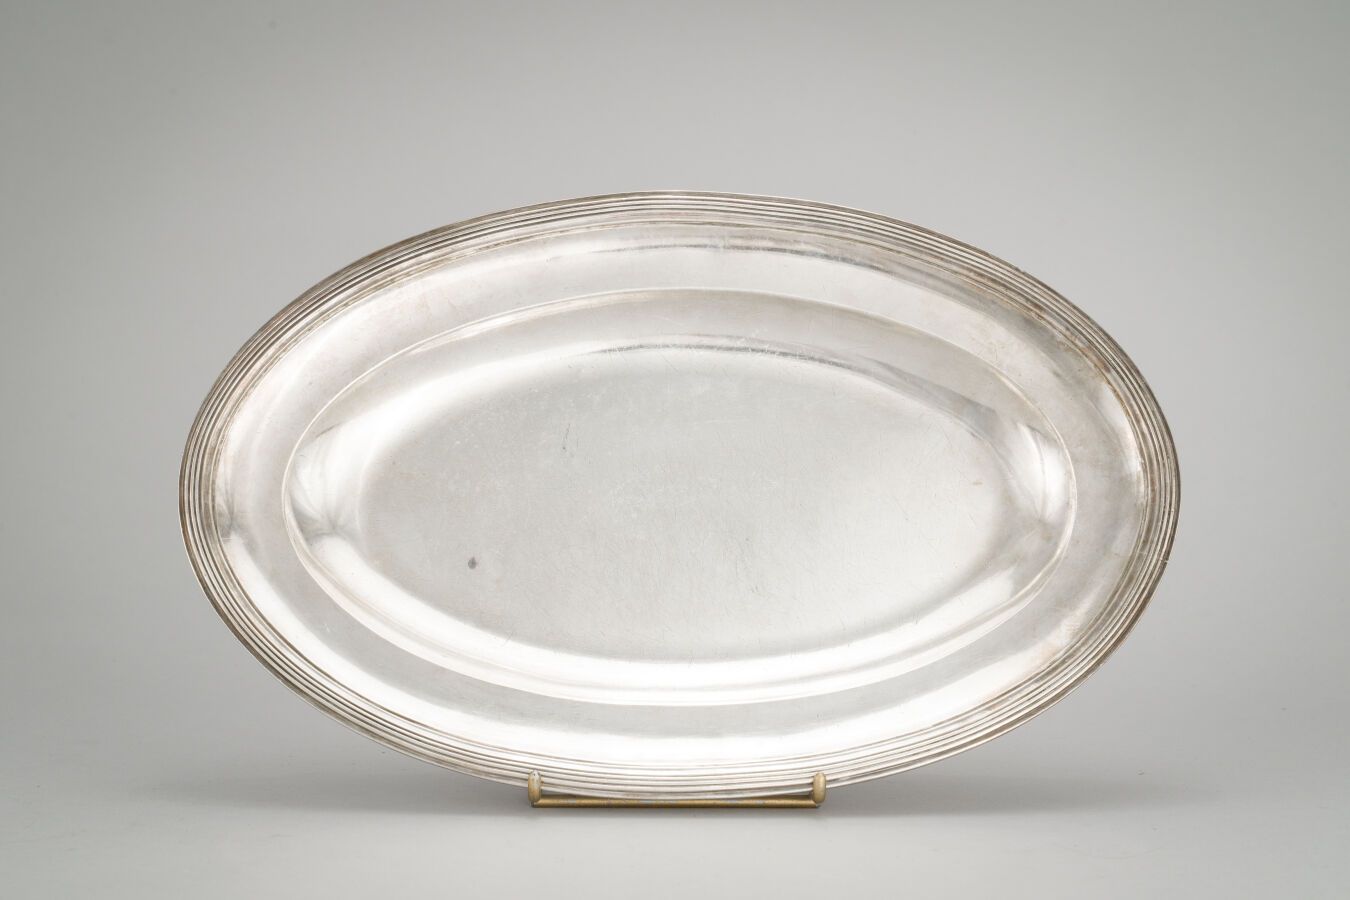 Null 97. Un piatto ovale in argento (950/1000) con bordi sfilettati.

Parigi 179&hellip;